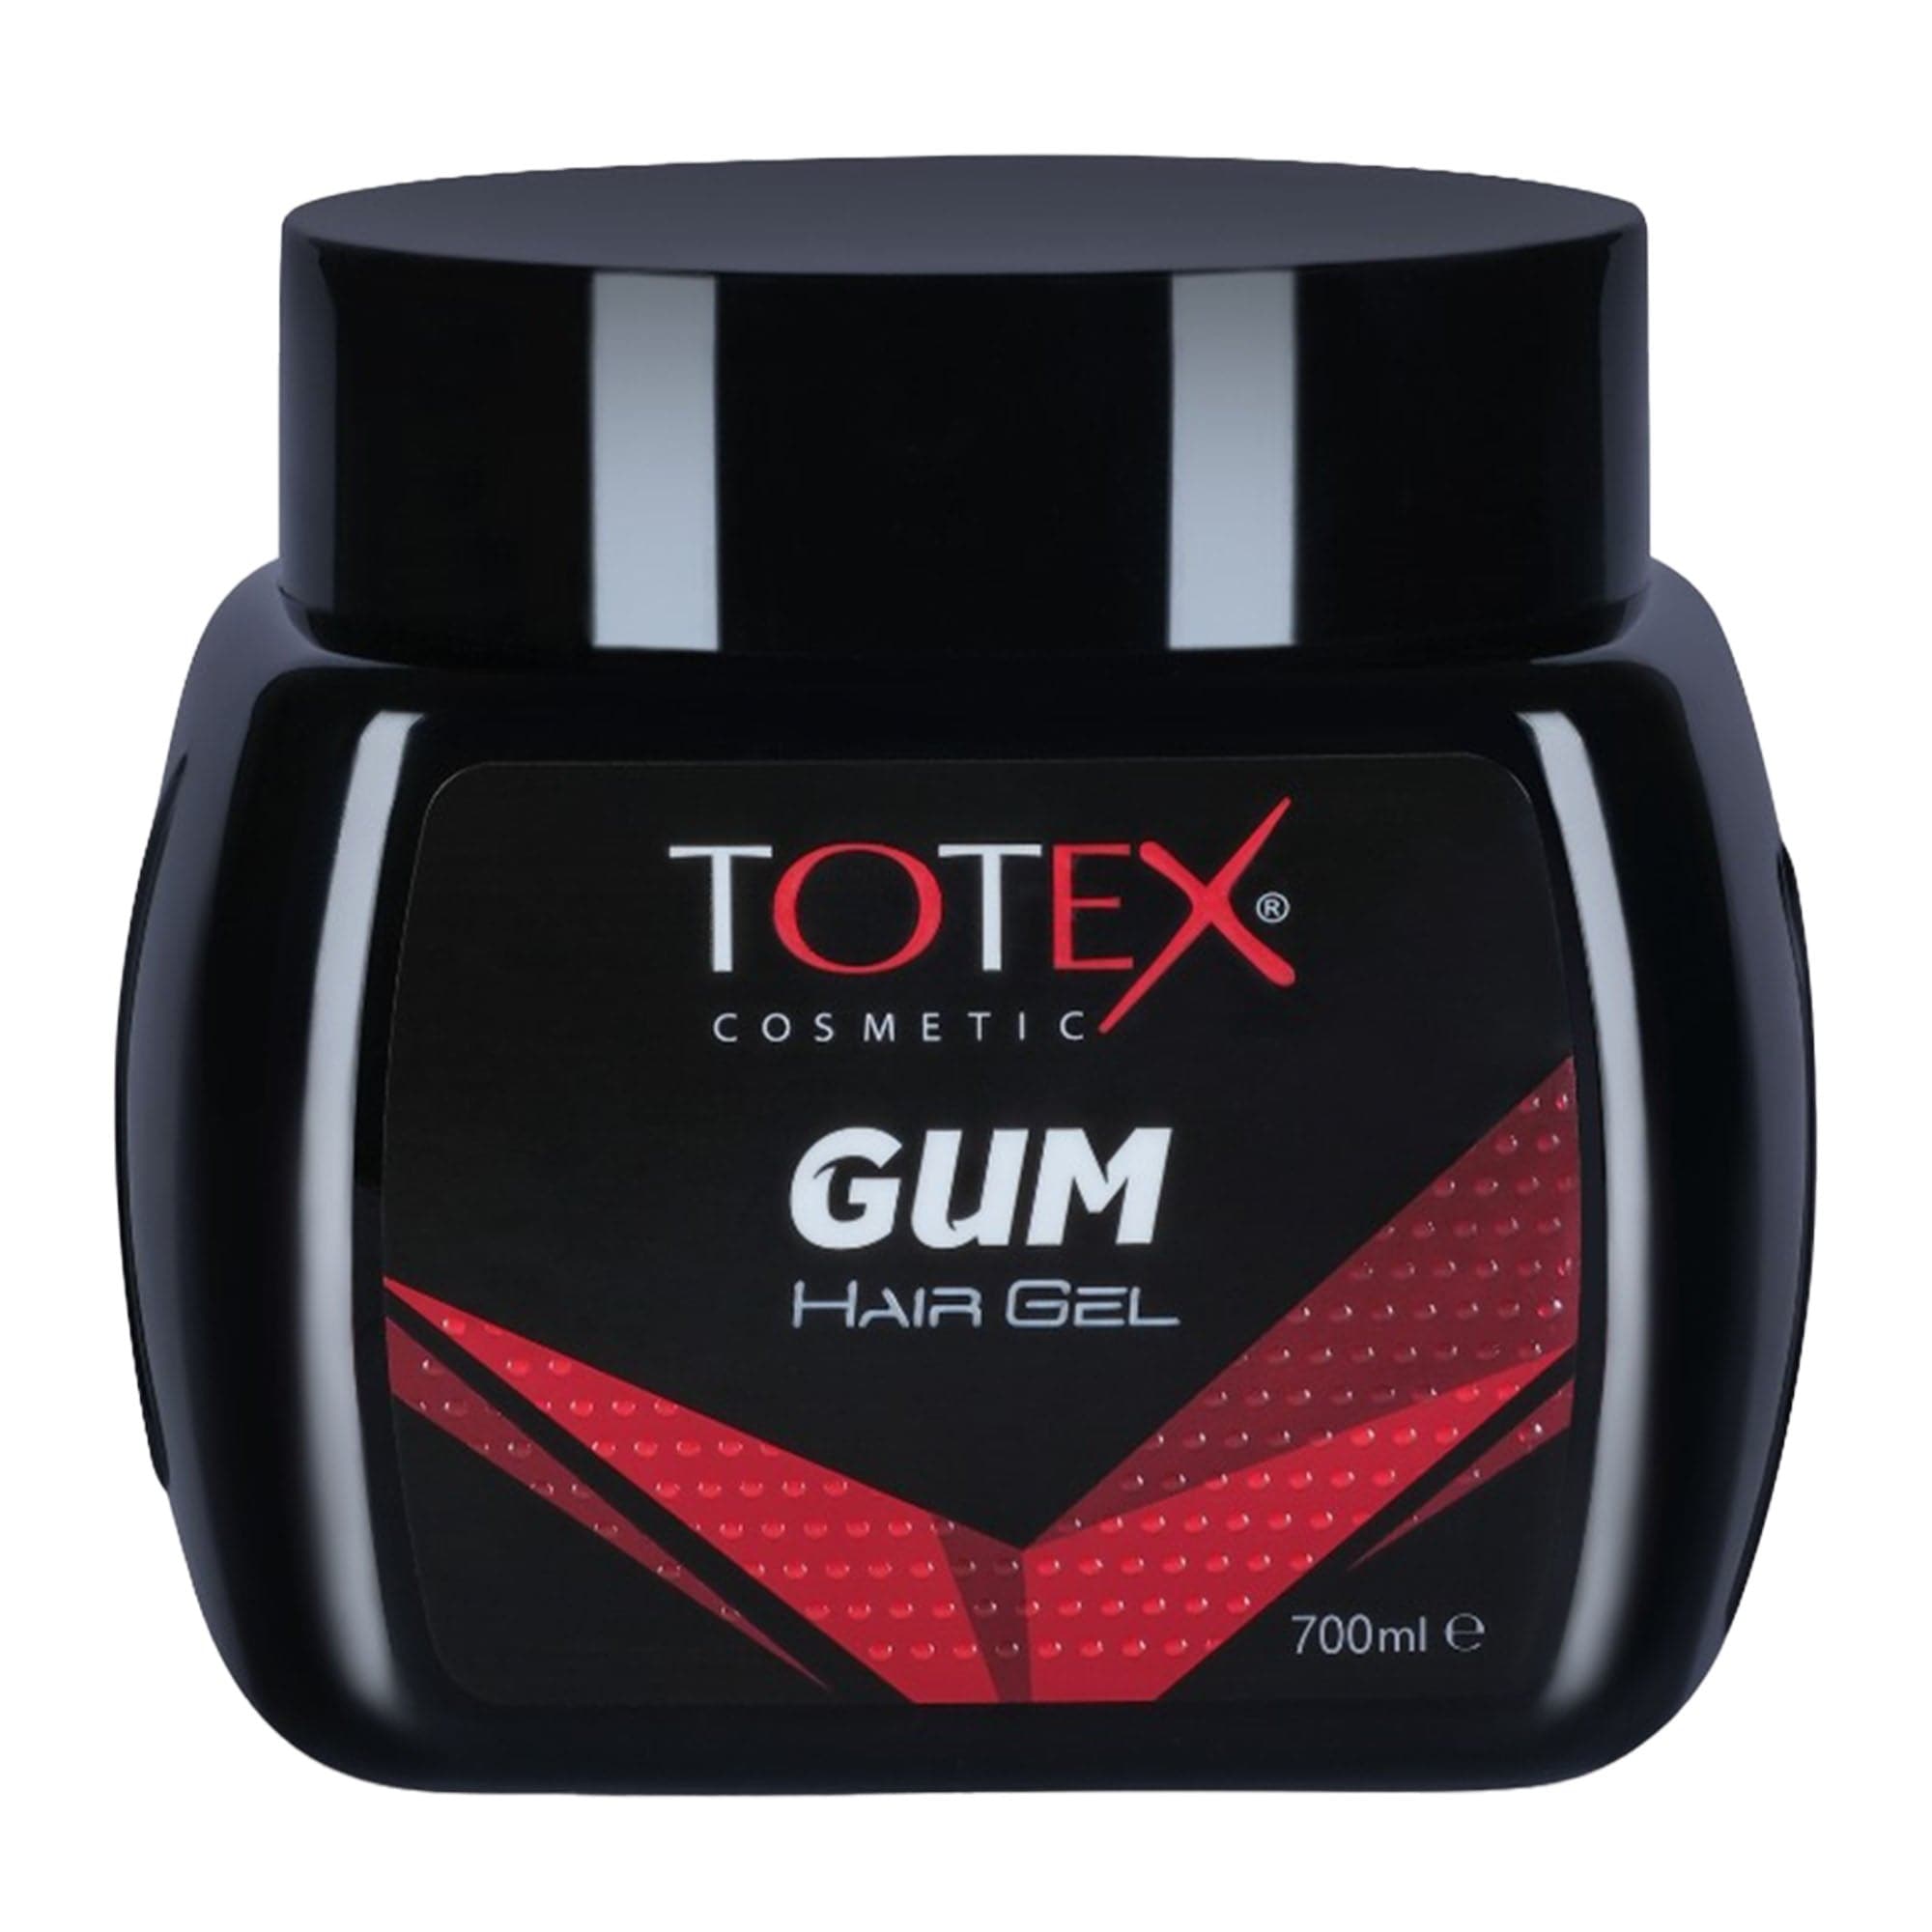 Totex - Hair Gel Gum 700ml